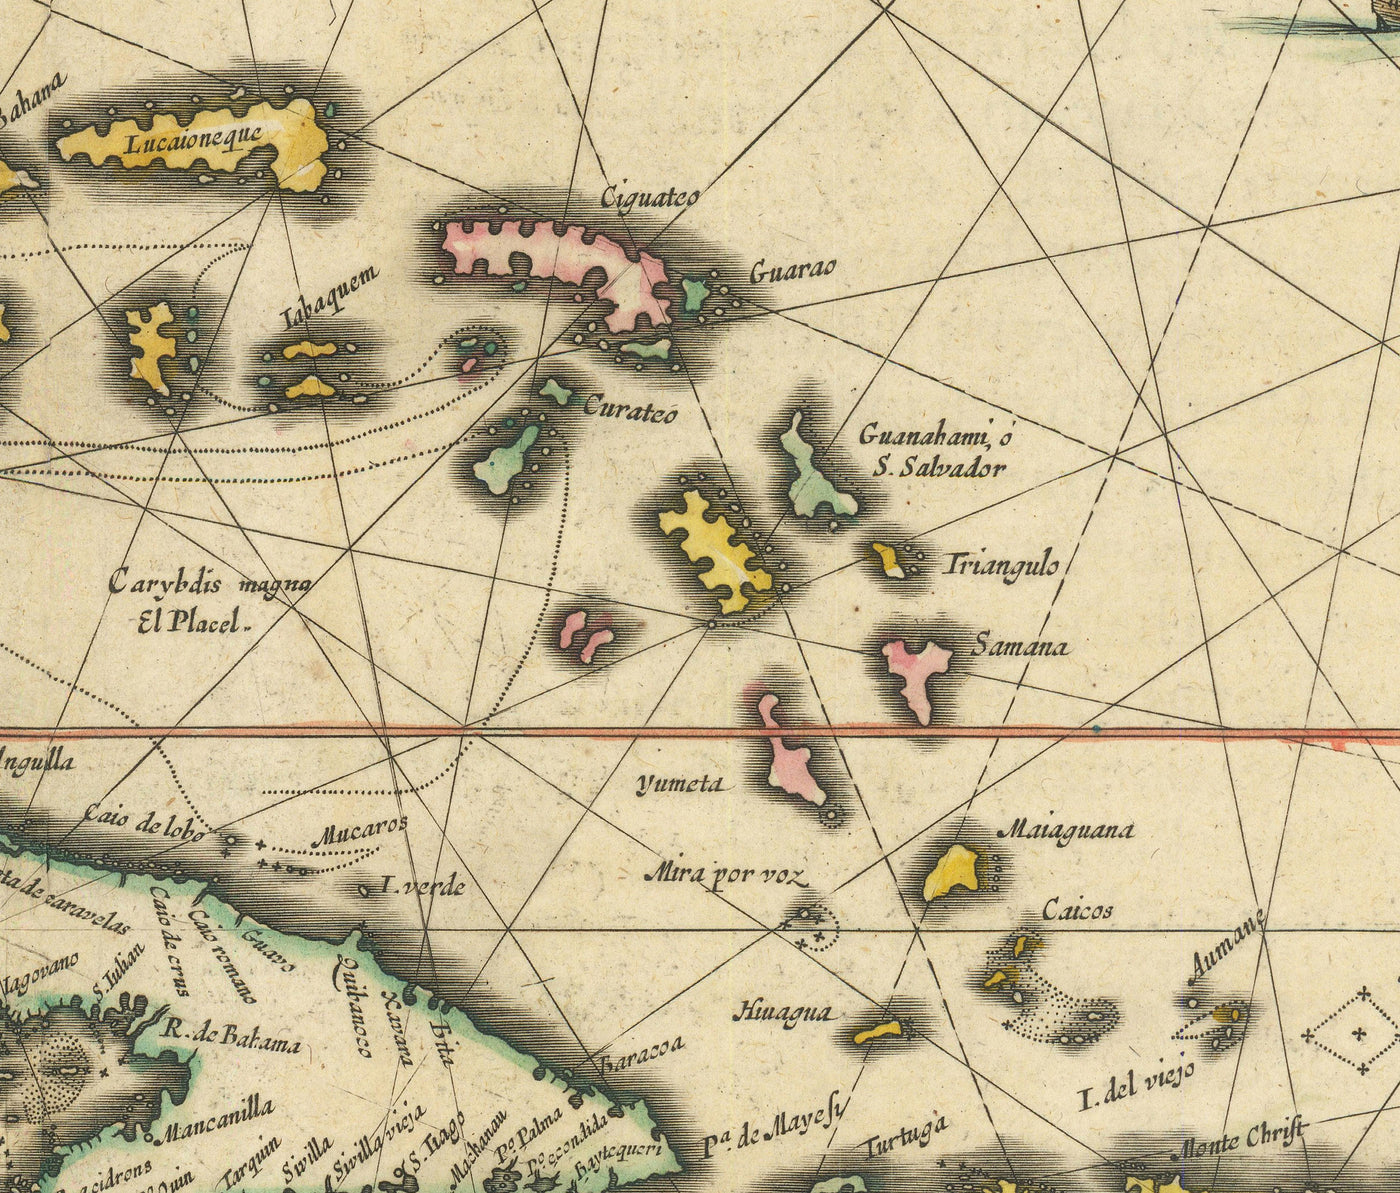 Mapa antiguo del Caribe en 1640 por Willem Blaeu - Cuba, Jamaica, República Dominicana, Puerto Rico, Las Bahamas